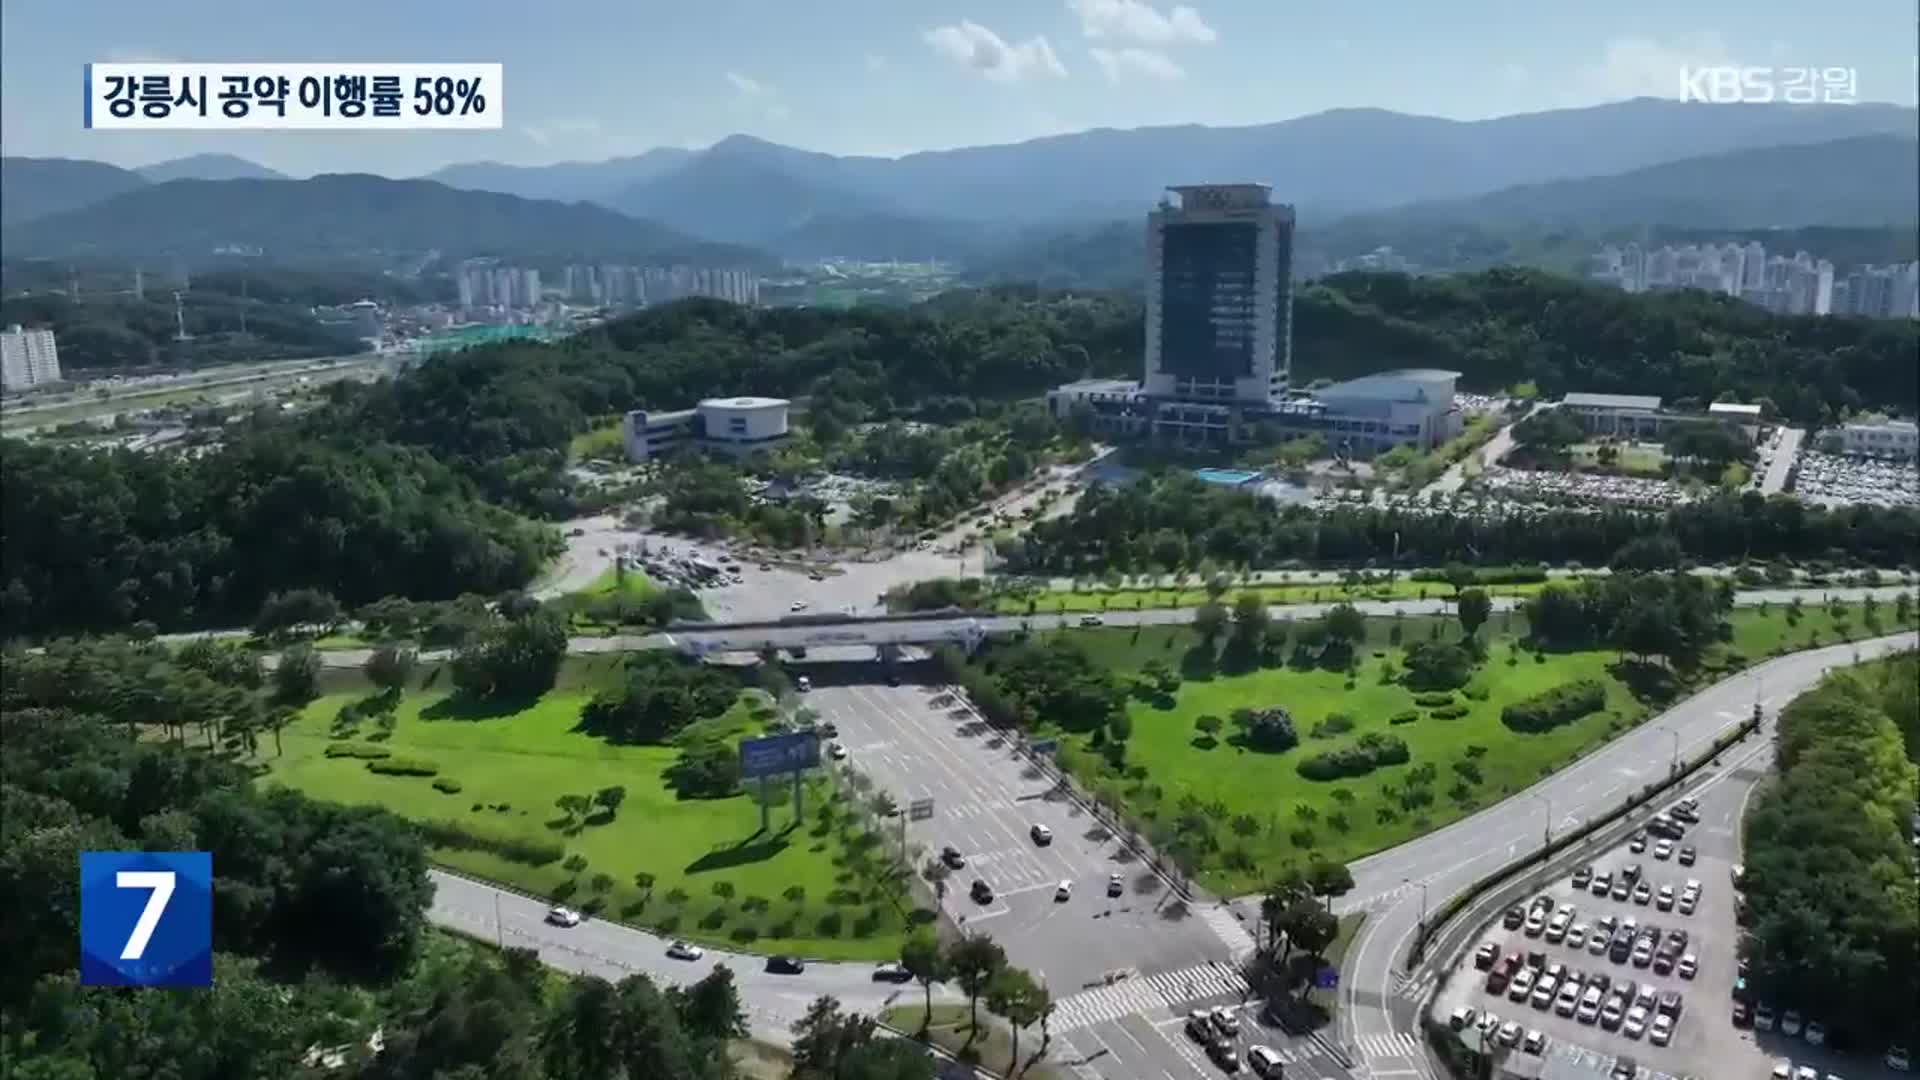 민선8기 강릉시 공약 이행률 58%…“기업하기 좋은 도시”